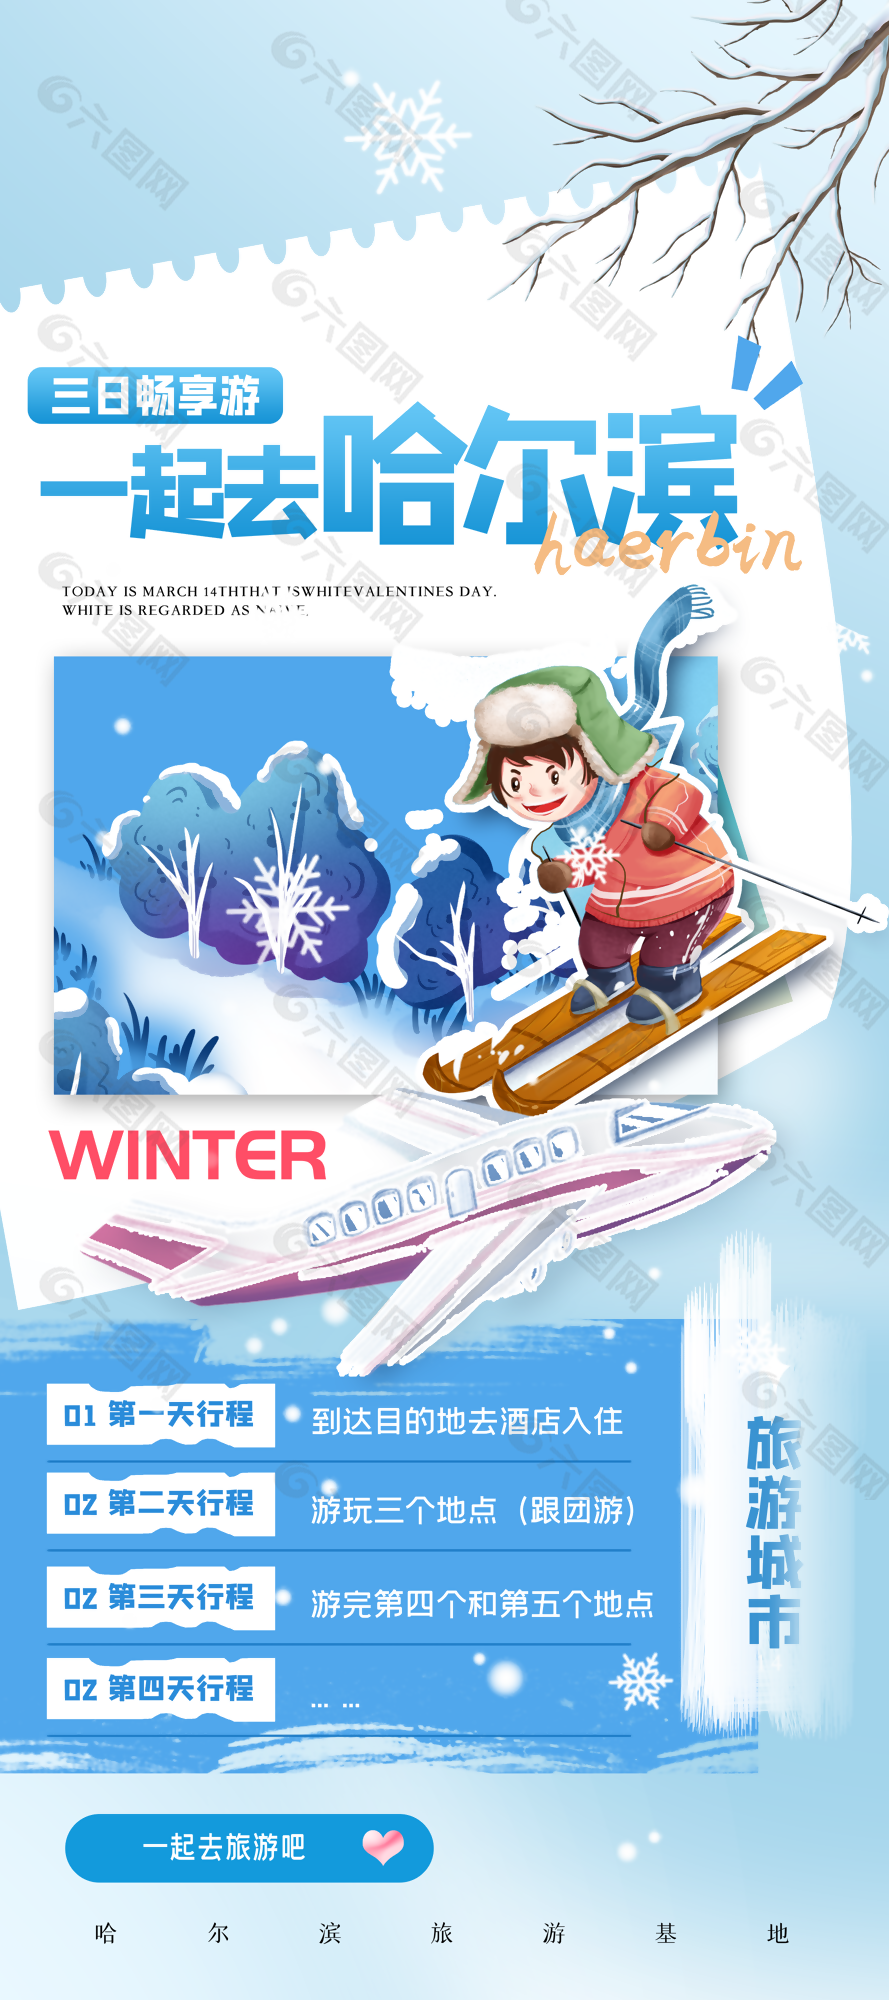 蓝色清新卡通畅游哈尔滨滑雪插画海报设计